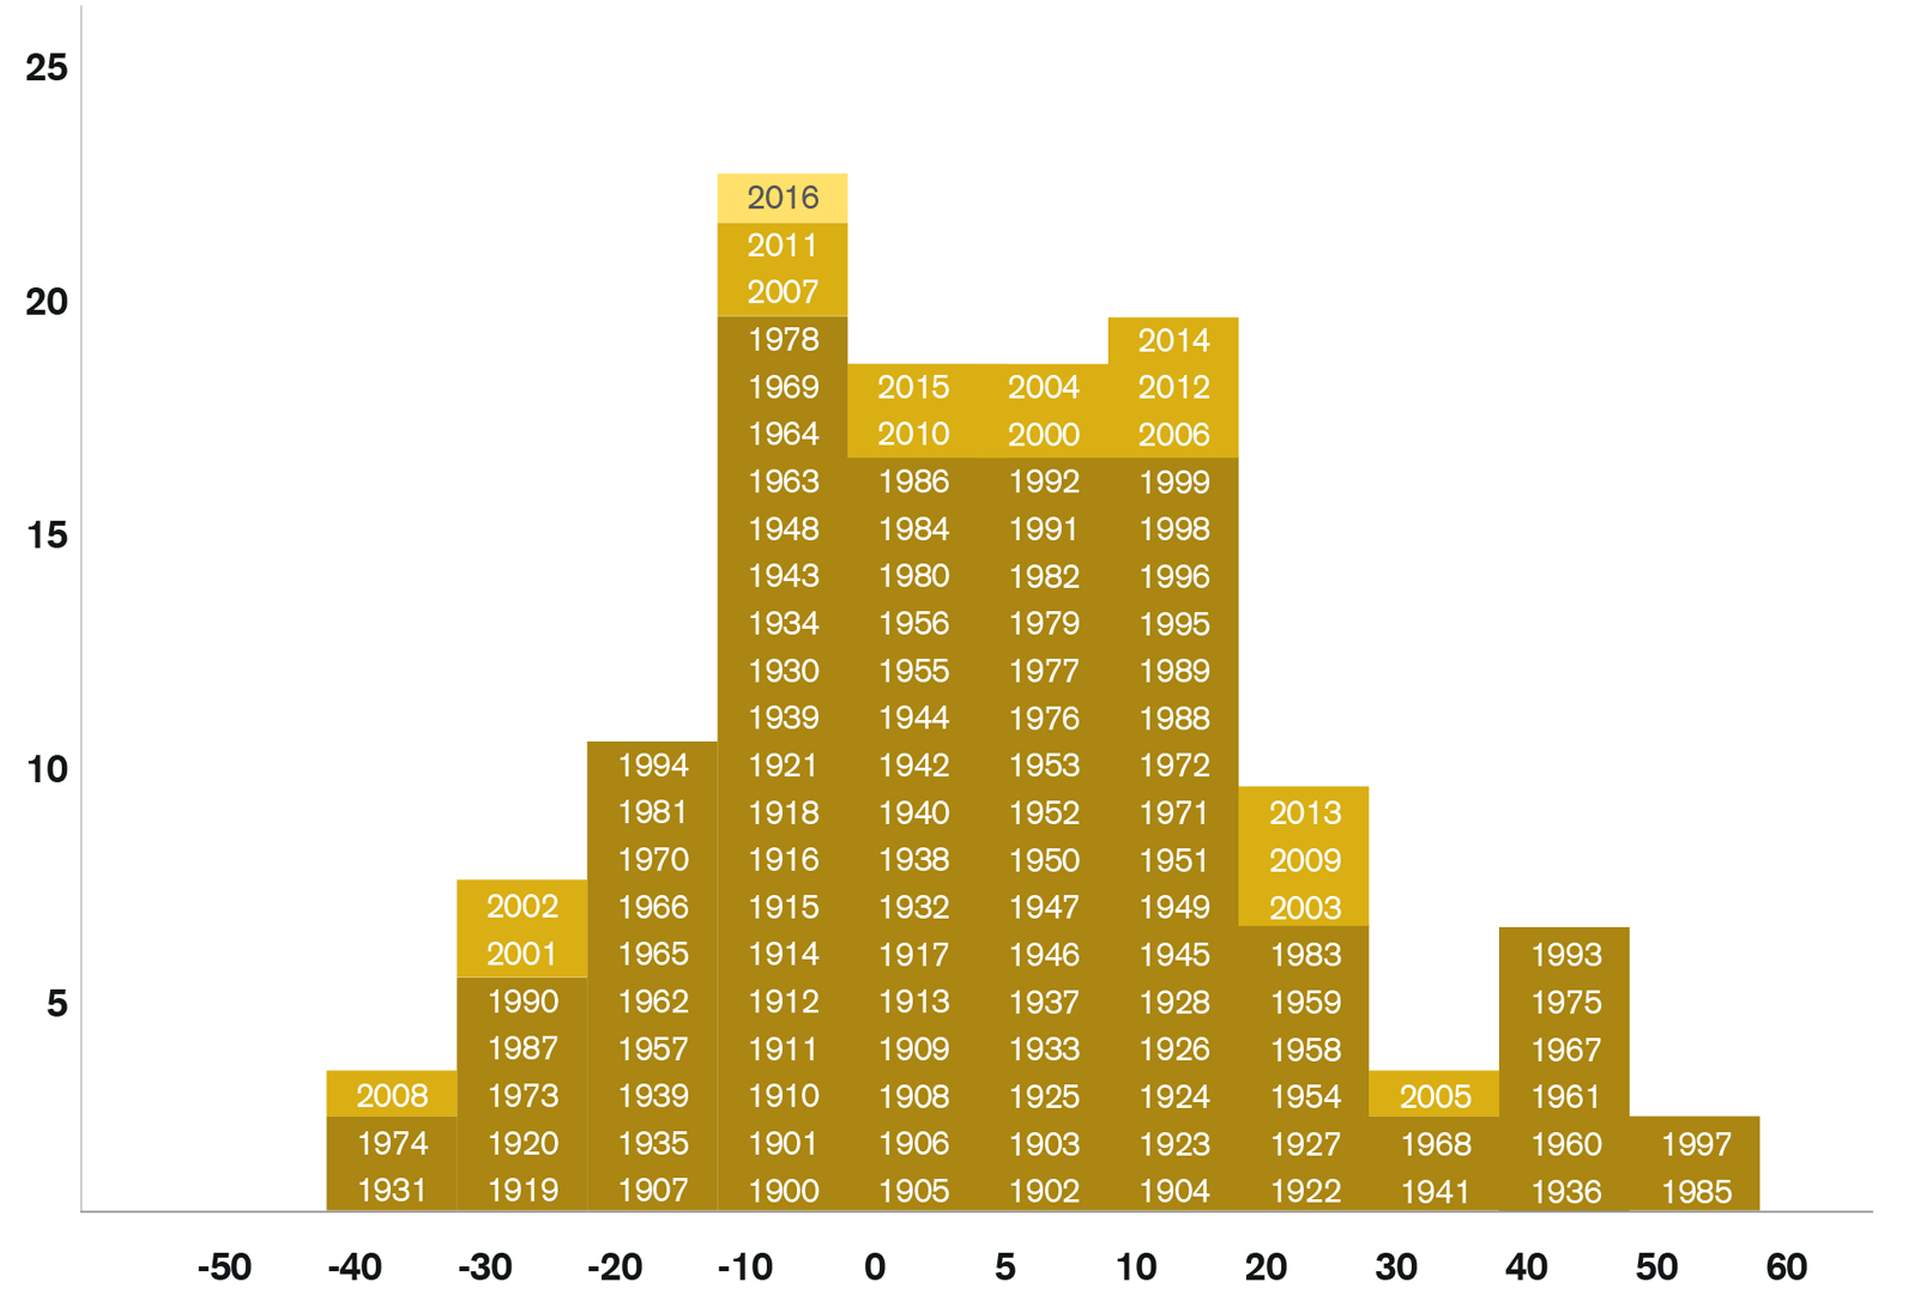 Répartition de la fréquence des rendements annuels des actions suisses (de 1900 à 2016)